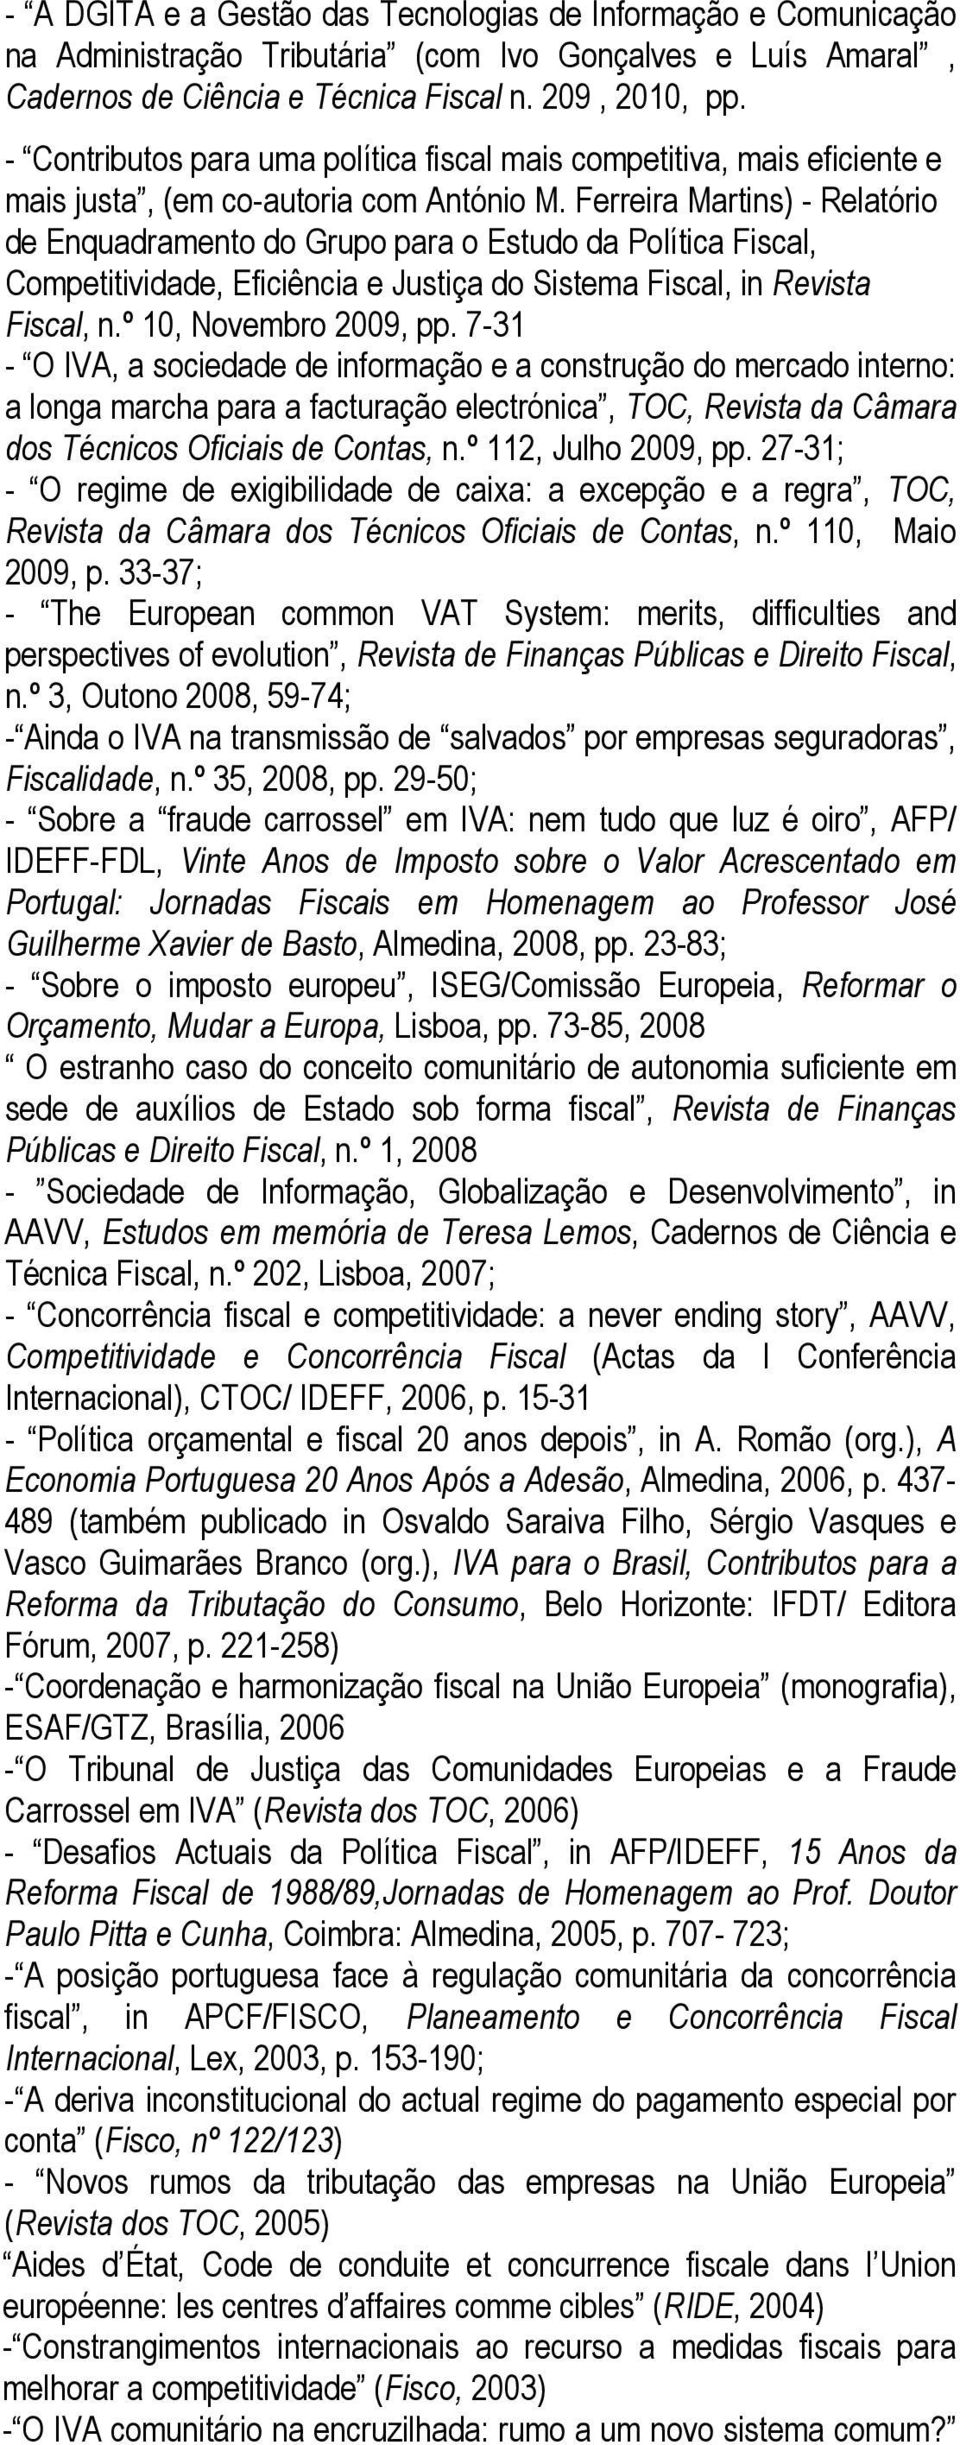 Ferreira Martins) - Relatório de Enquadramento do Grupo para o Estudo da Política Fiscal, Competitividade, Eficiência e Justiça do Sistema Fiscal, in Revista Fiscal, n.º 10, Novembro 2009, pp.